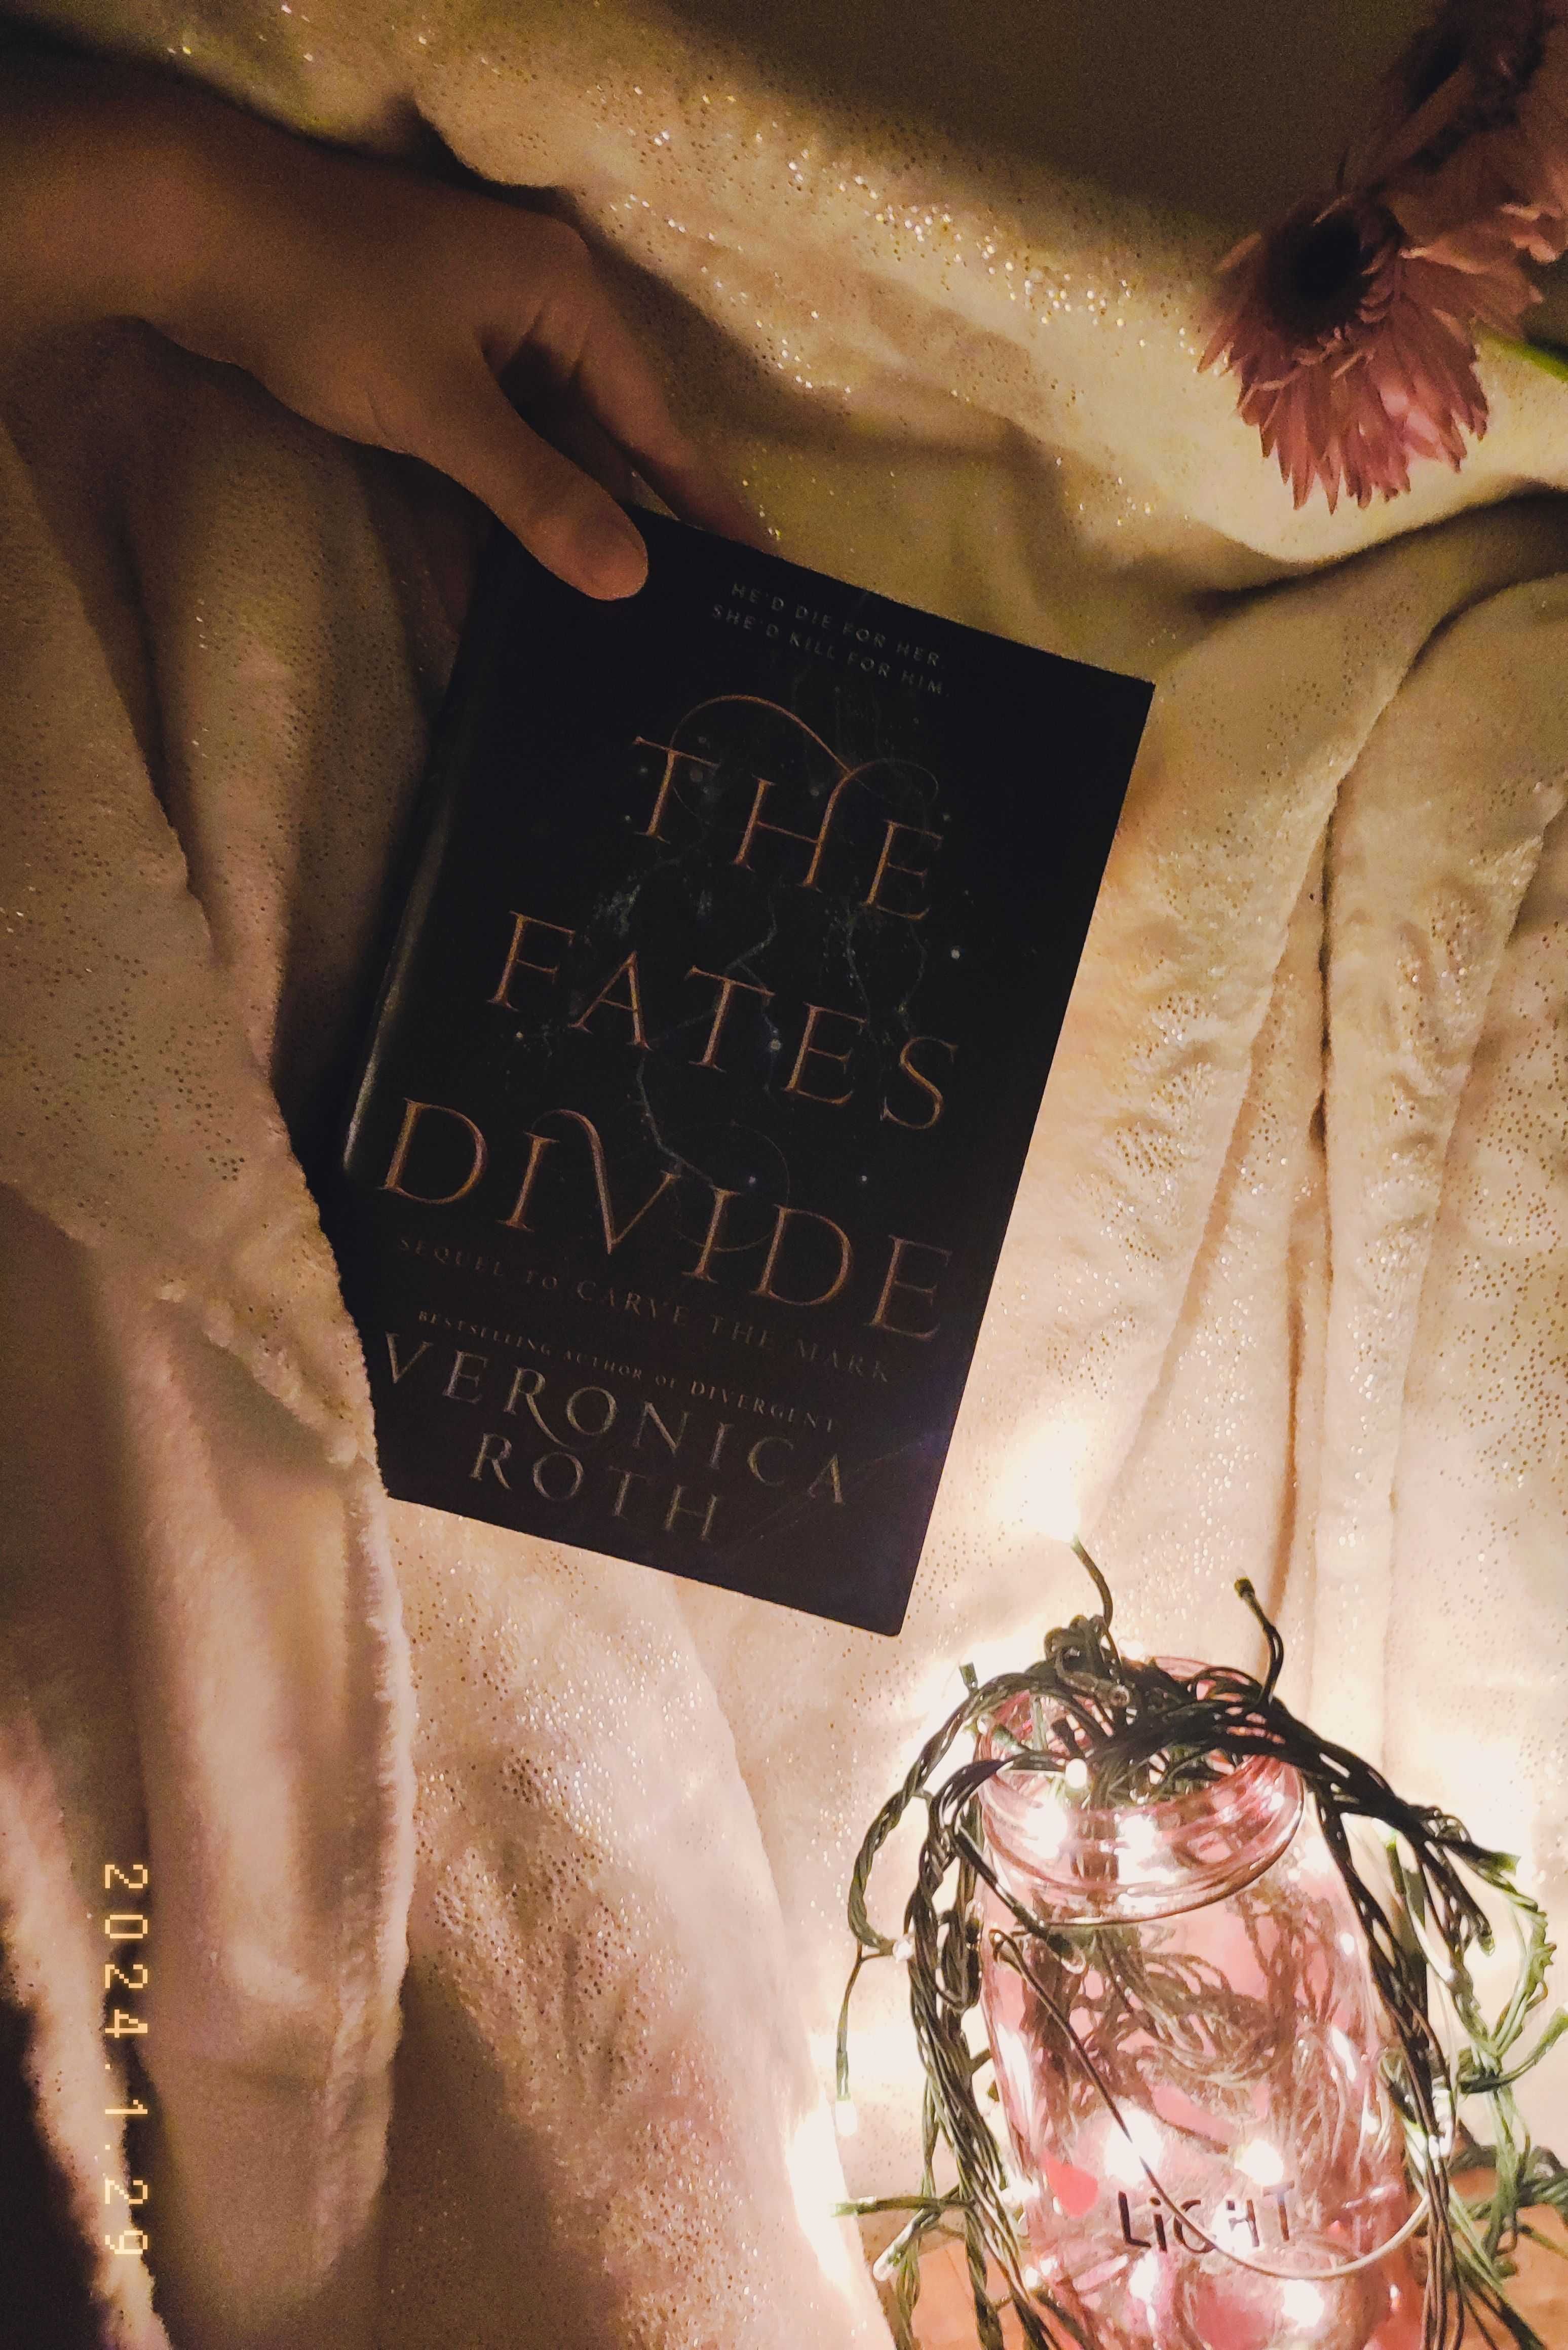 The Fates Divide – Veronica Roth (3€ portes incluídos)